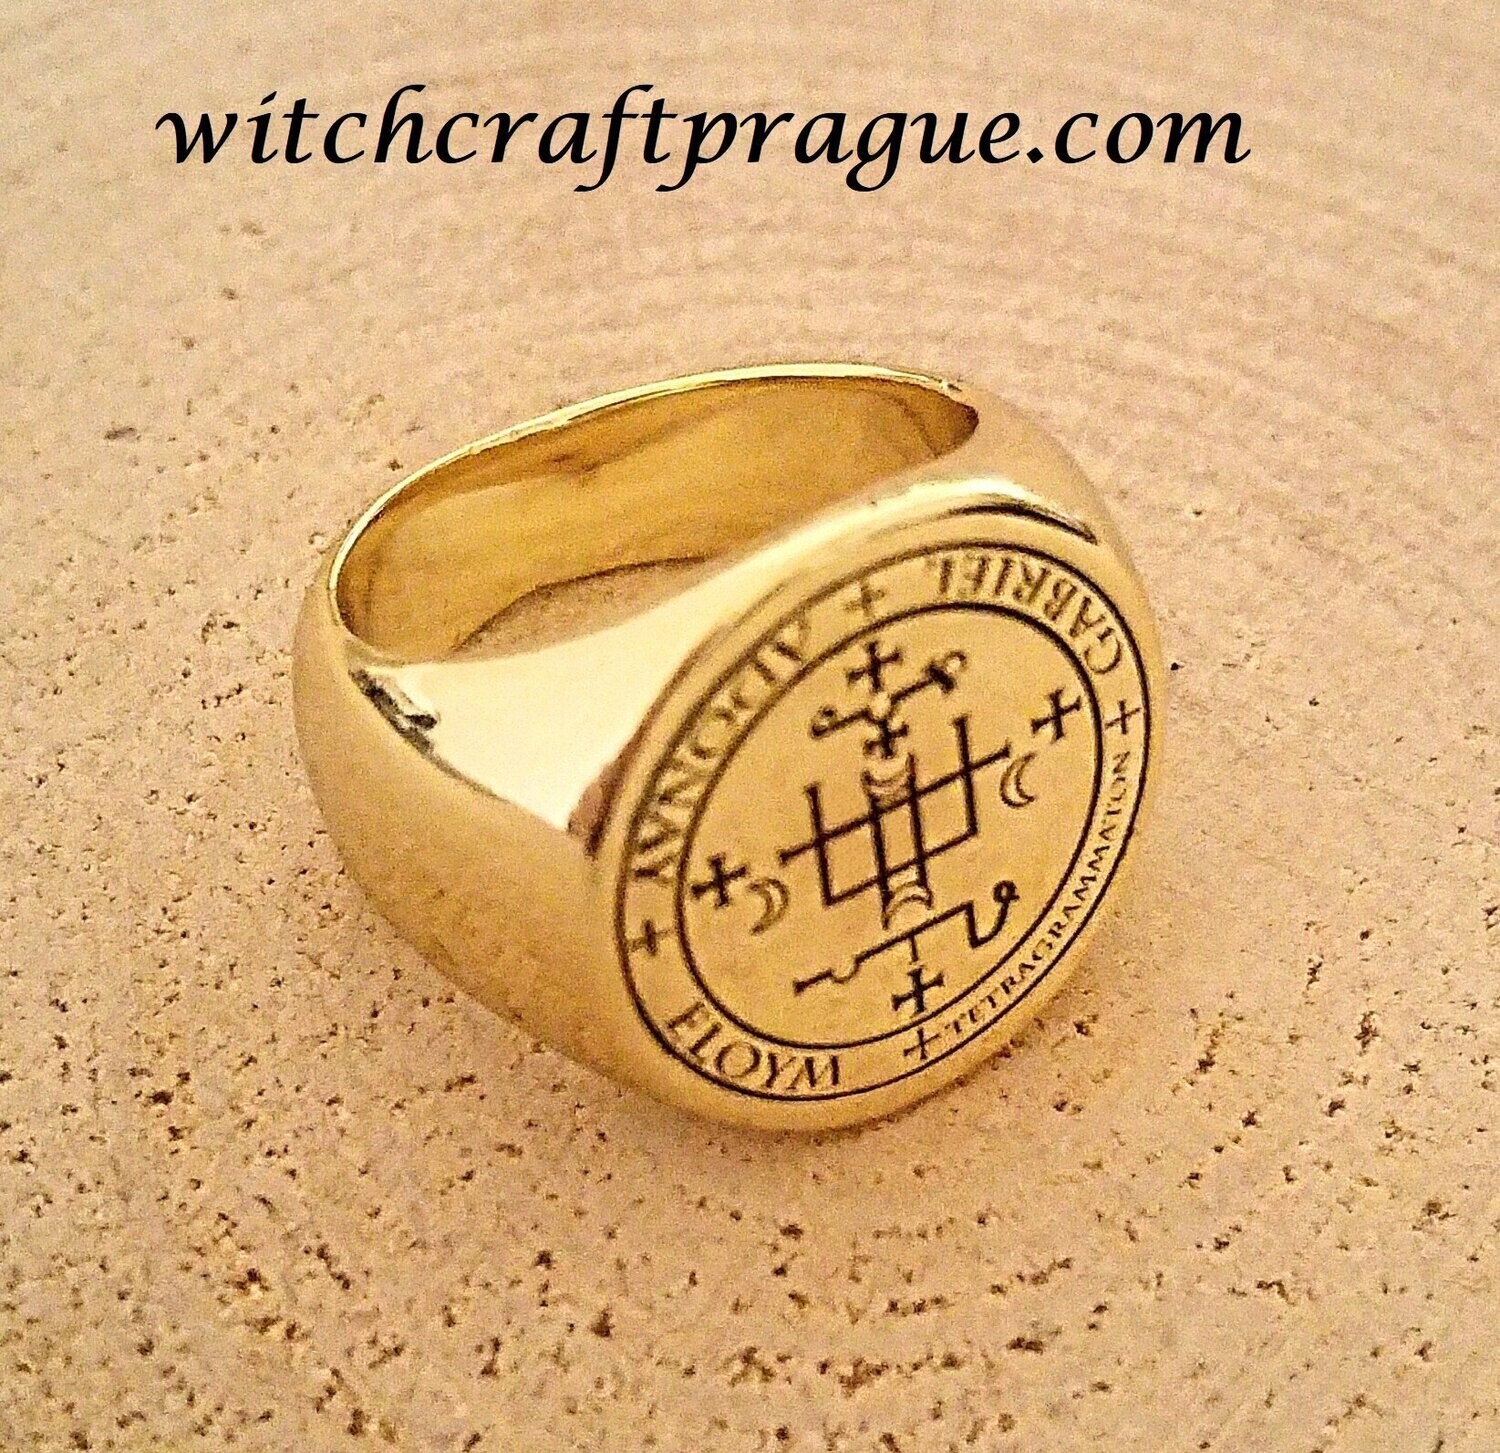 Archangel Gabriel sigil ring witchcraft amulet